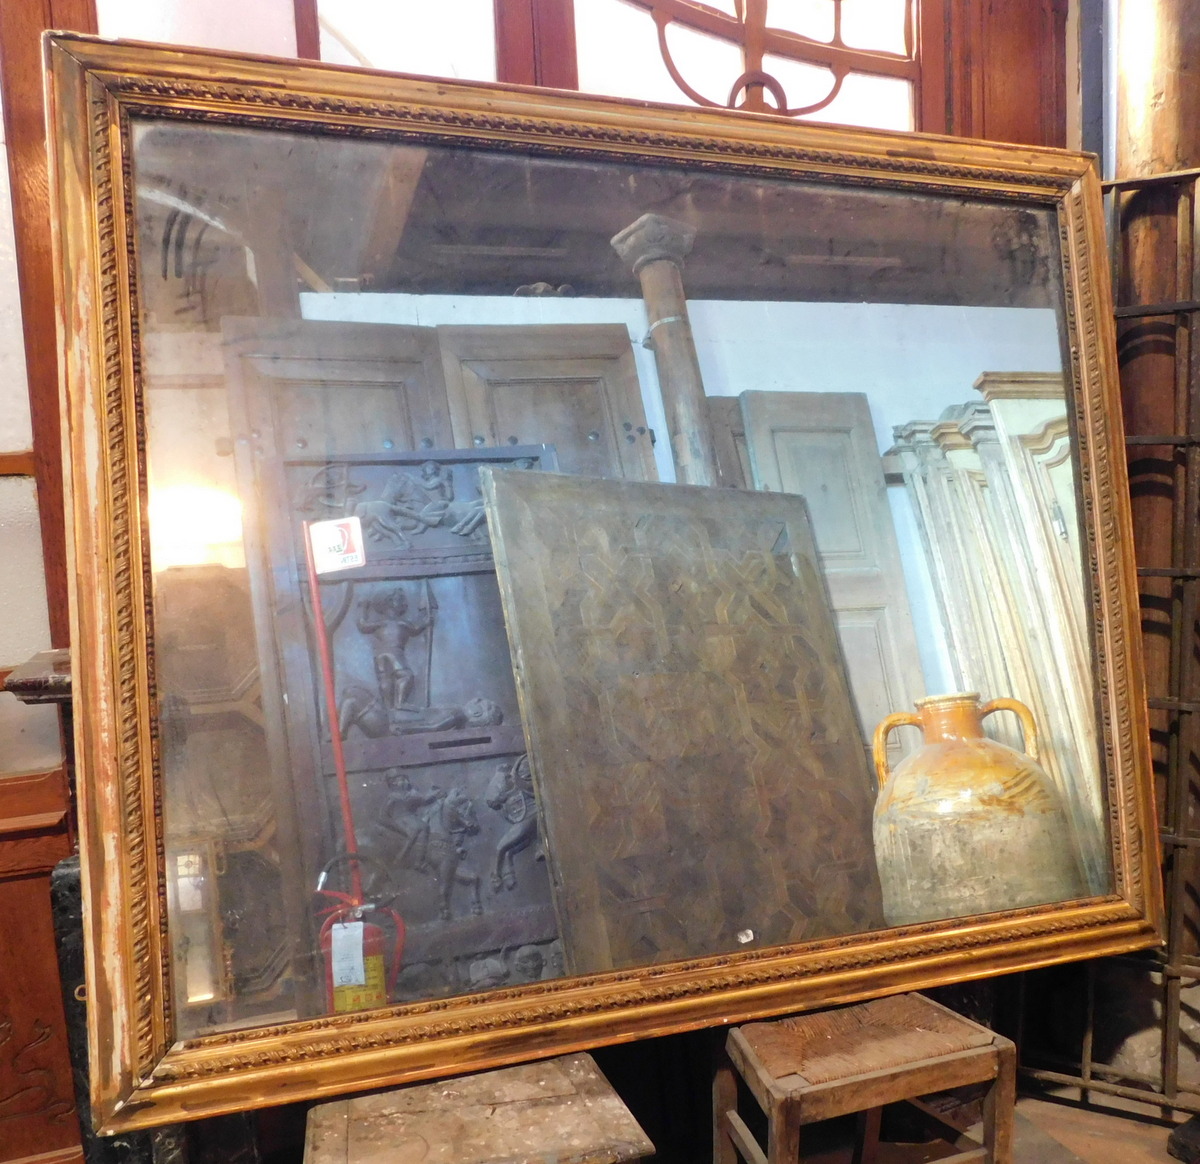 SPECC392 - Specchiera in legno dorato, epoca '800, misura cm L 158 x H 188